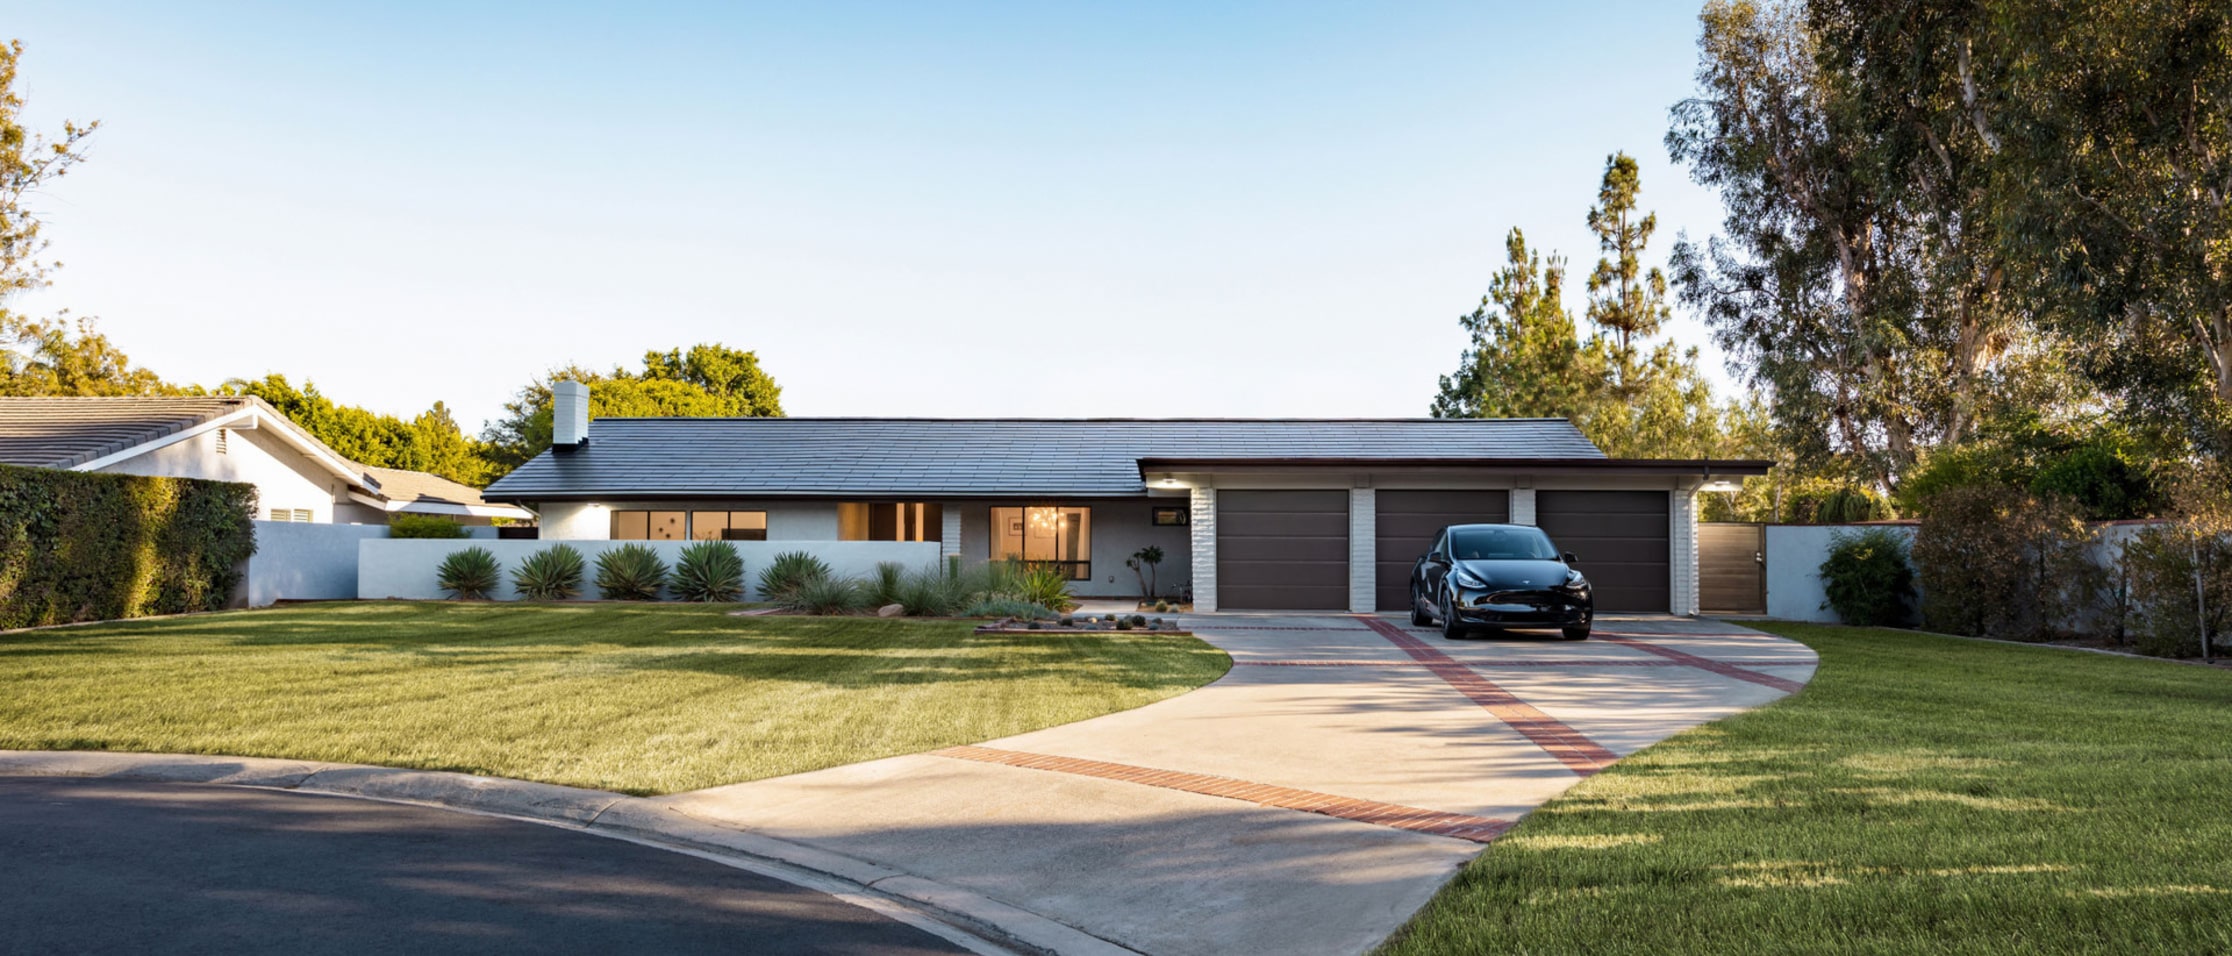 Σπίτι που τροφοδοτείται από προϊόντα Tesla Energy